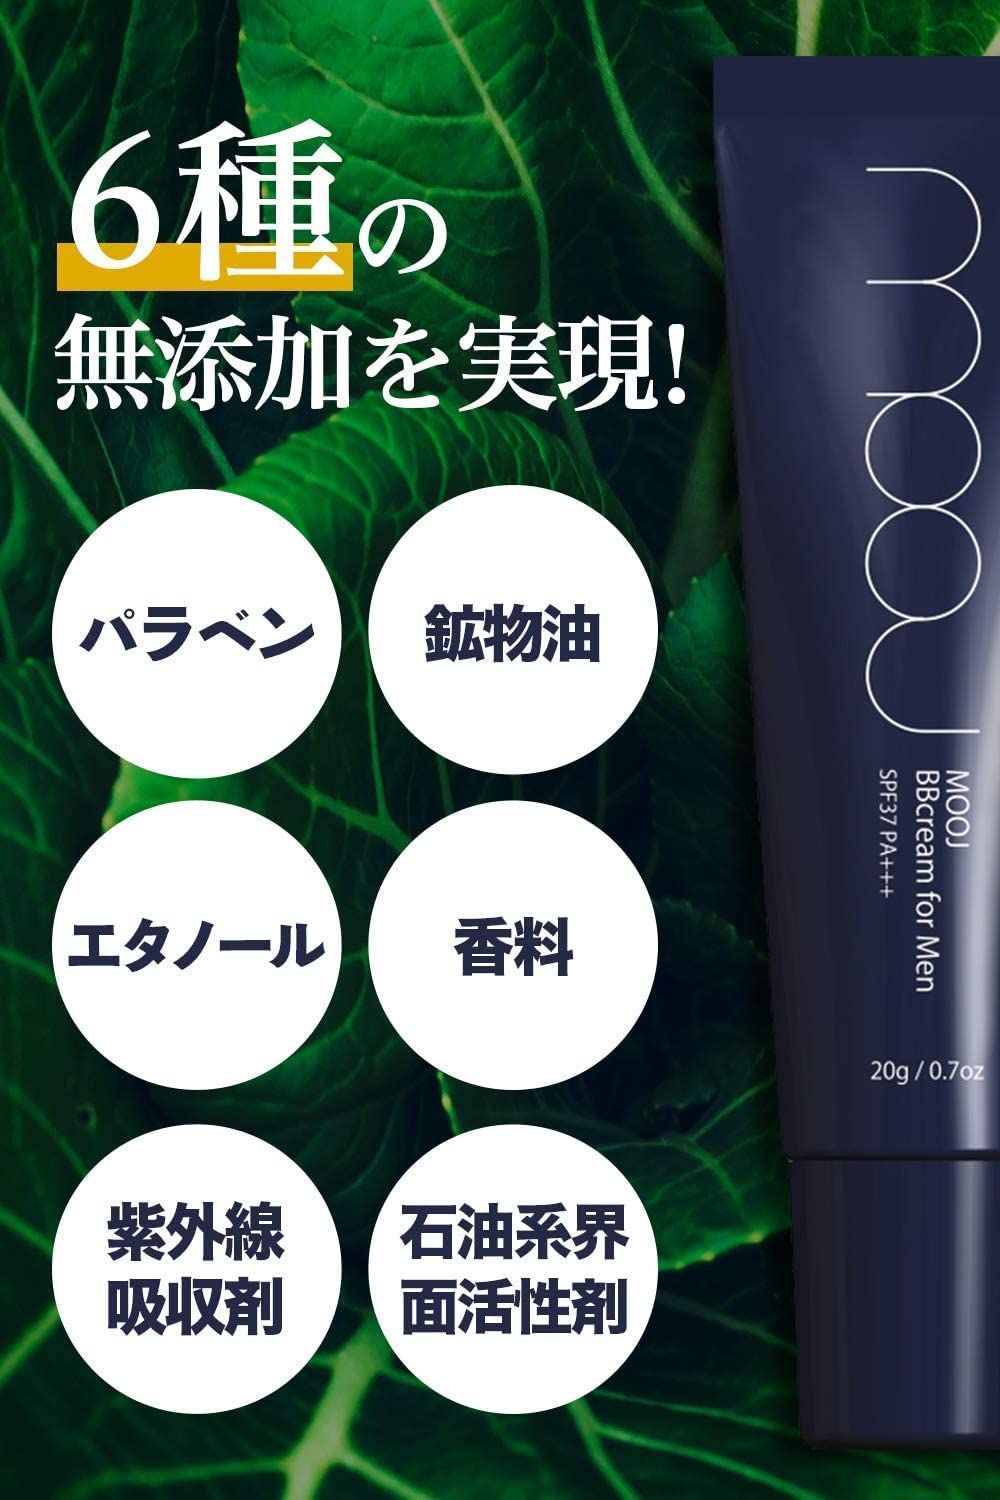 【特価商品】MOOJ メンズ BBクリーム コンシーラー ファンデーション メーキャップ効果で 青ひげ/クマ/ニキビ跡/毛穴 を隠す 日焼け止め SPF37 PA+++ (1個セット)